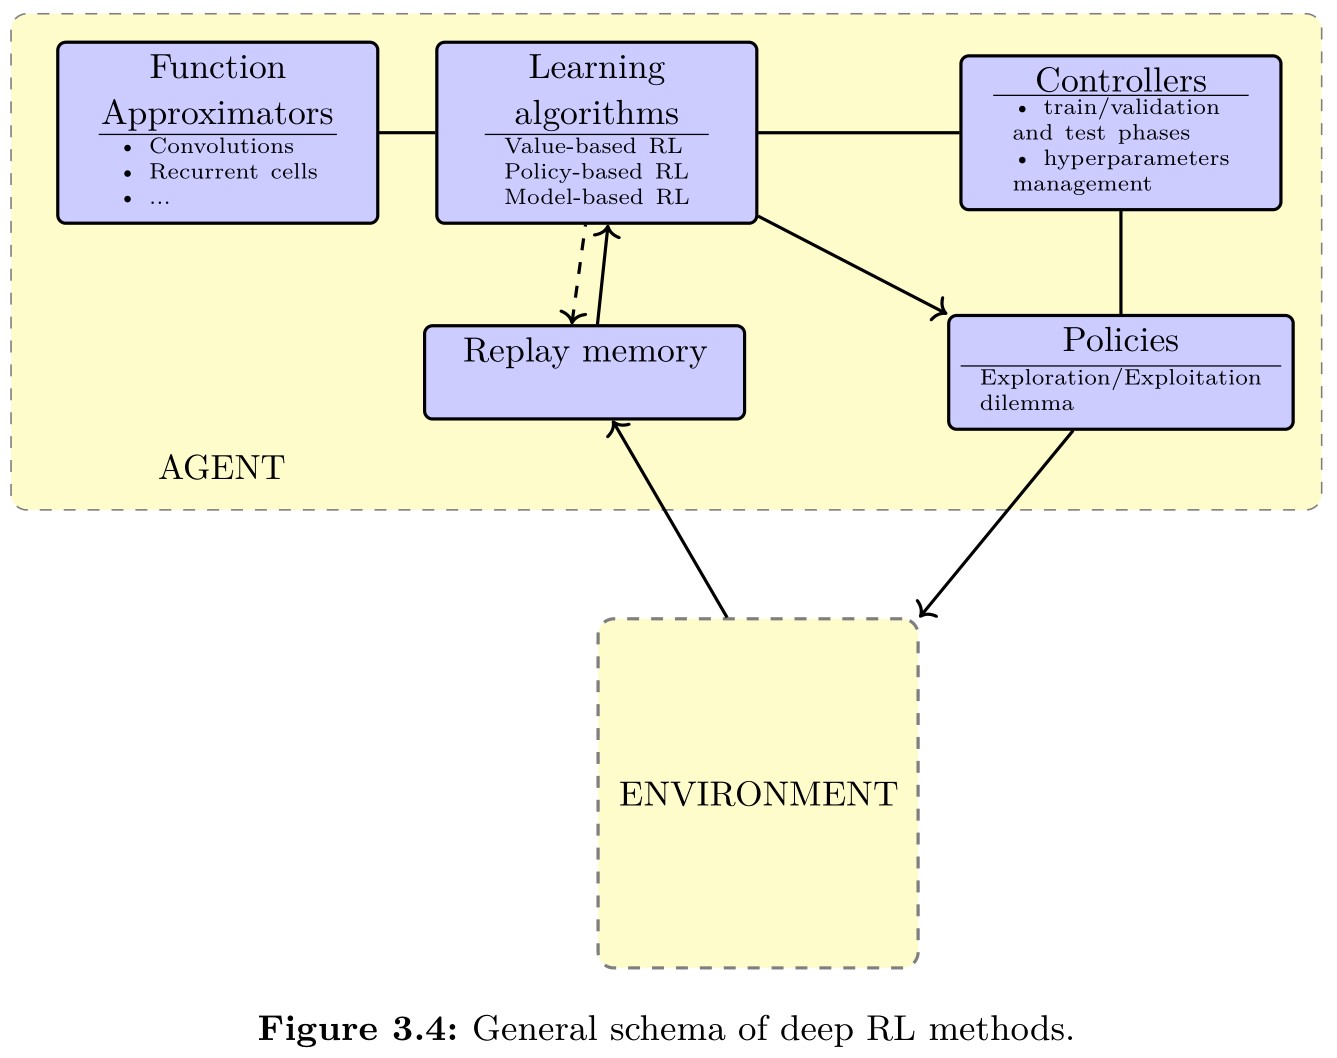 General schema of deep RL methods